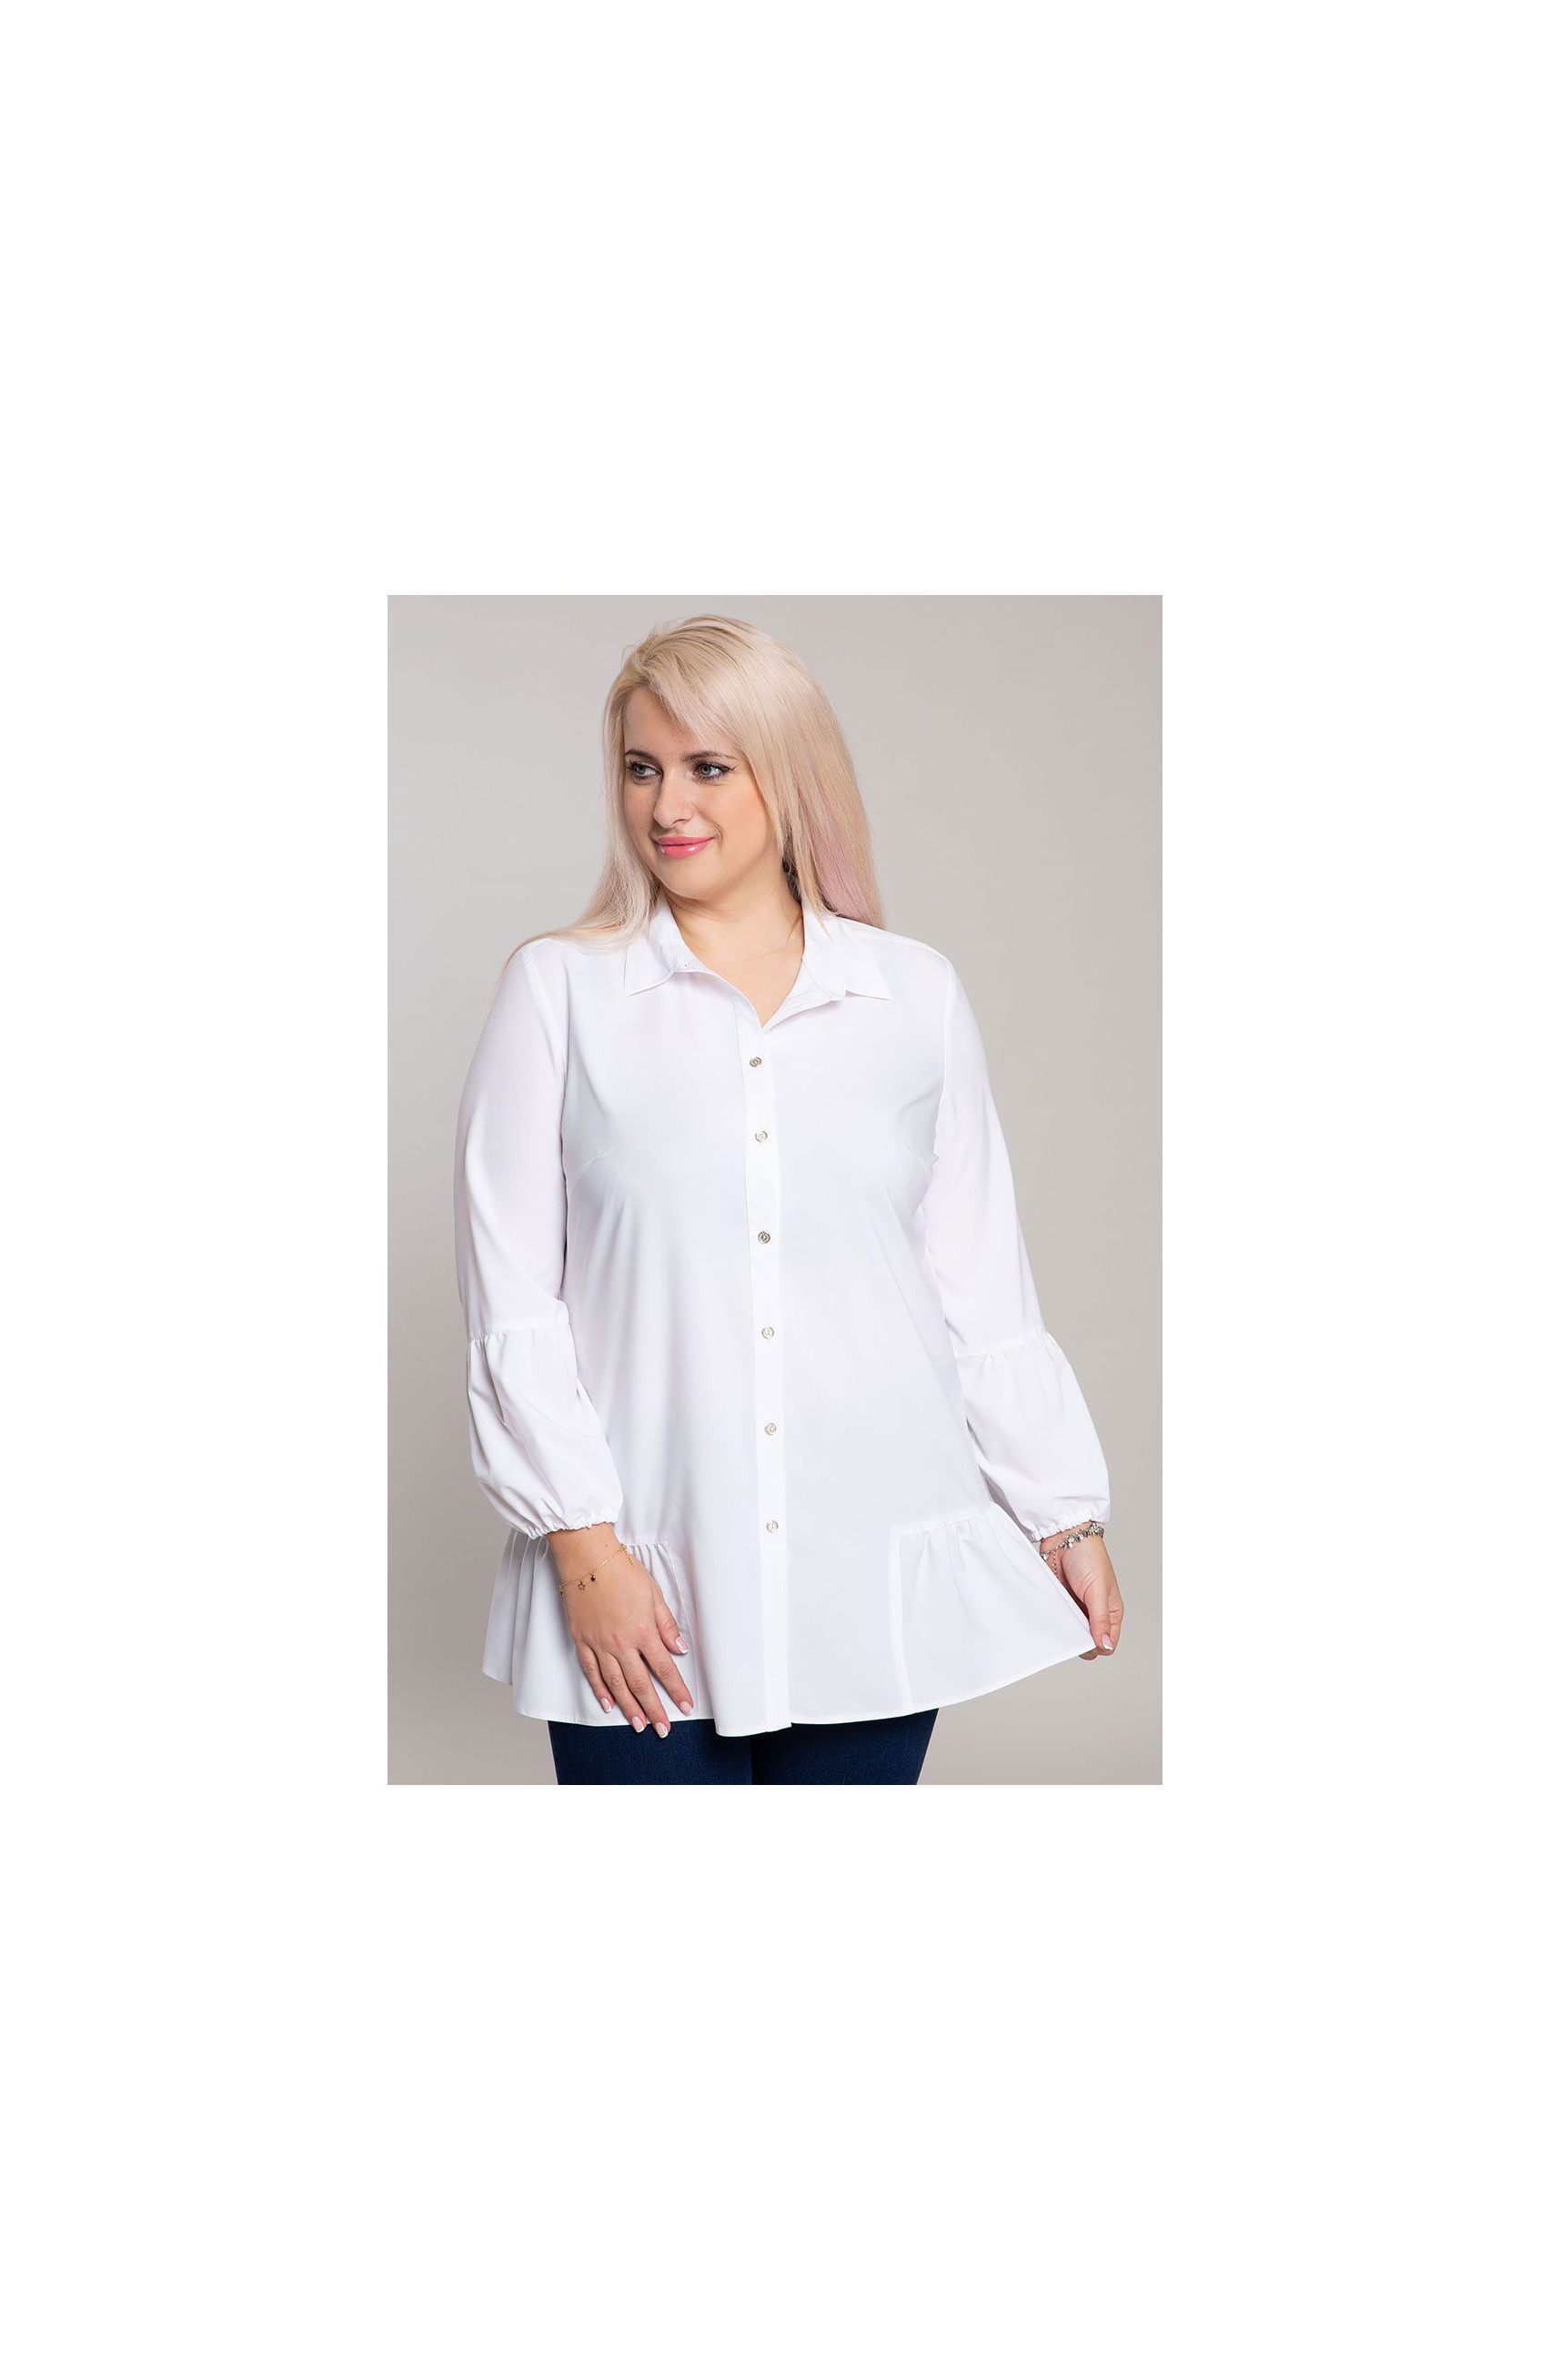 Бяла риза туника с къдрици